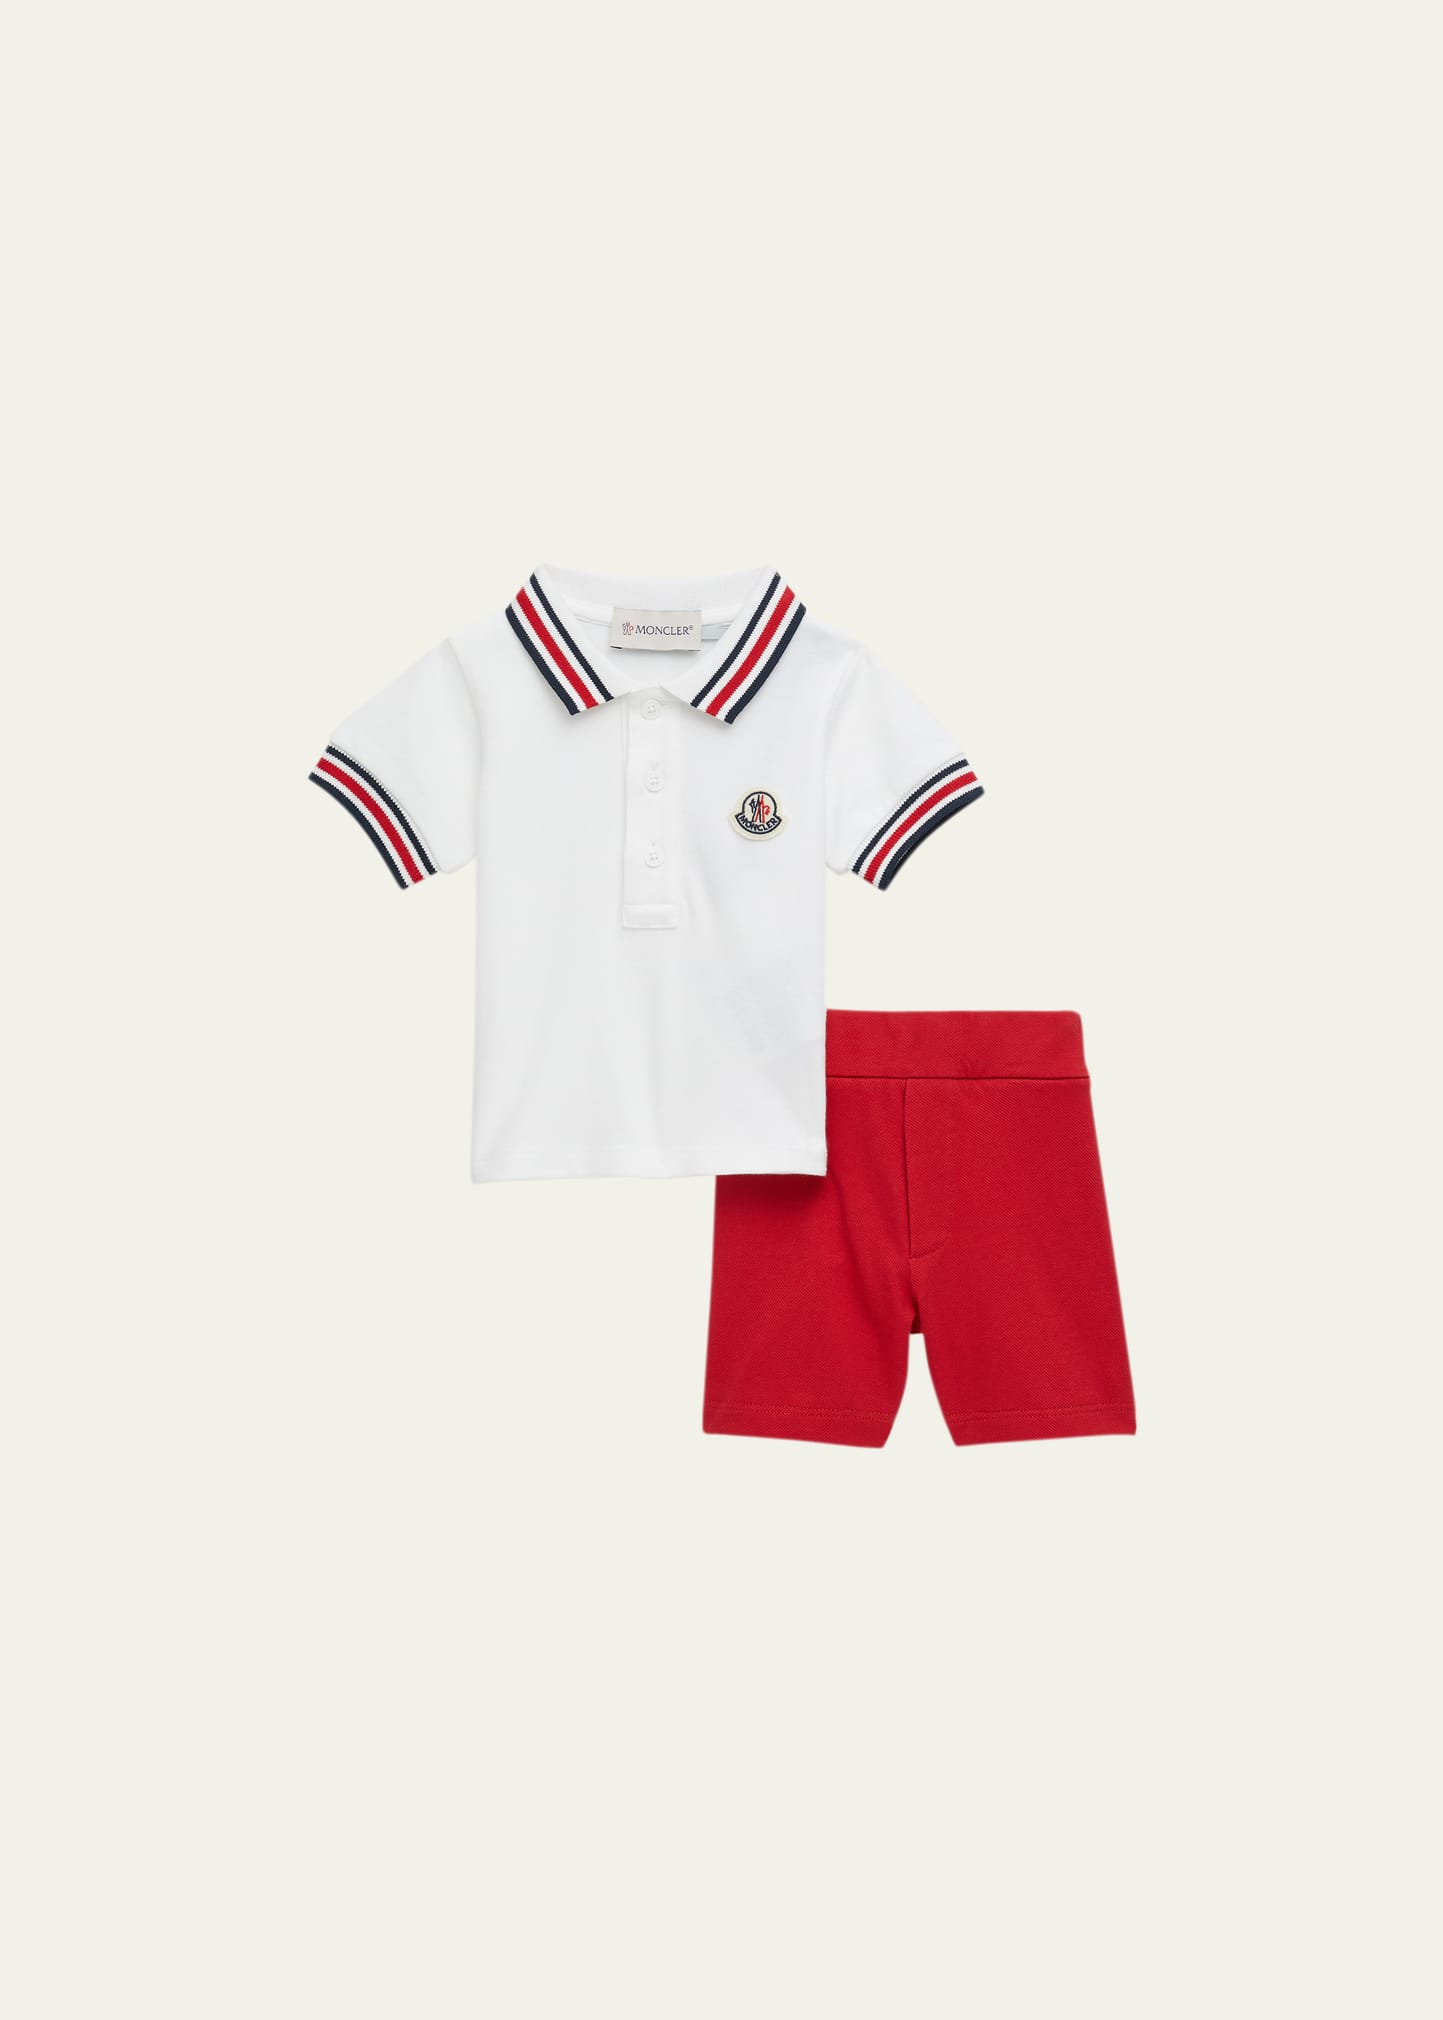 Moncler Kids' Boy's Striped Polo Shirt W/ Shorts In Miscellaneous